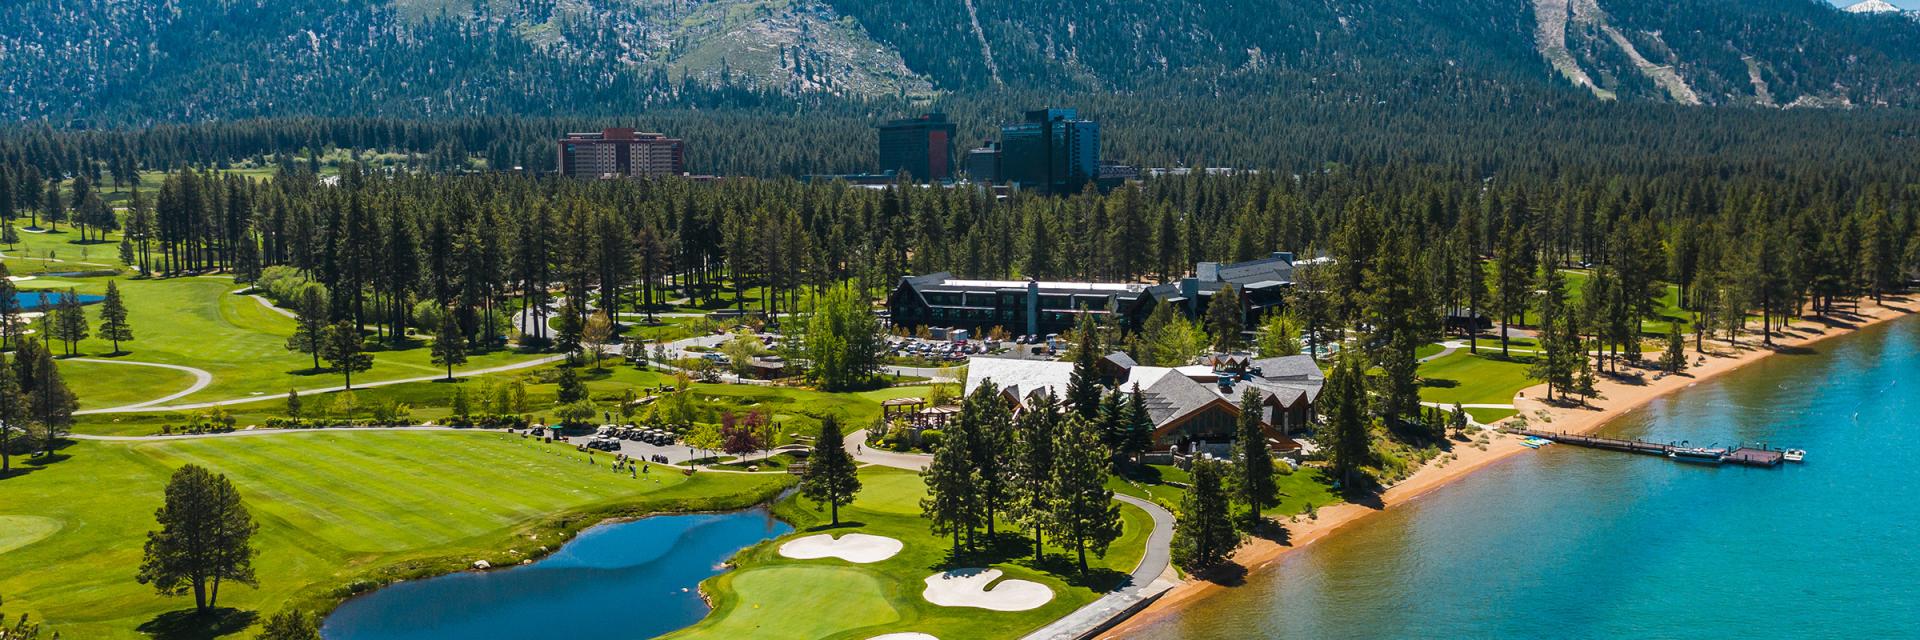 Edgewood Tahoe Resort Aerial View at Summer